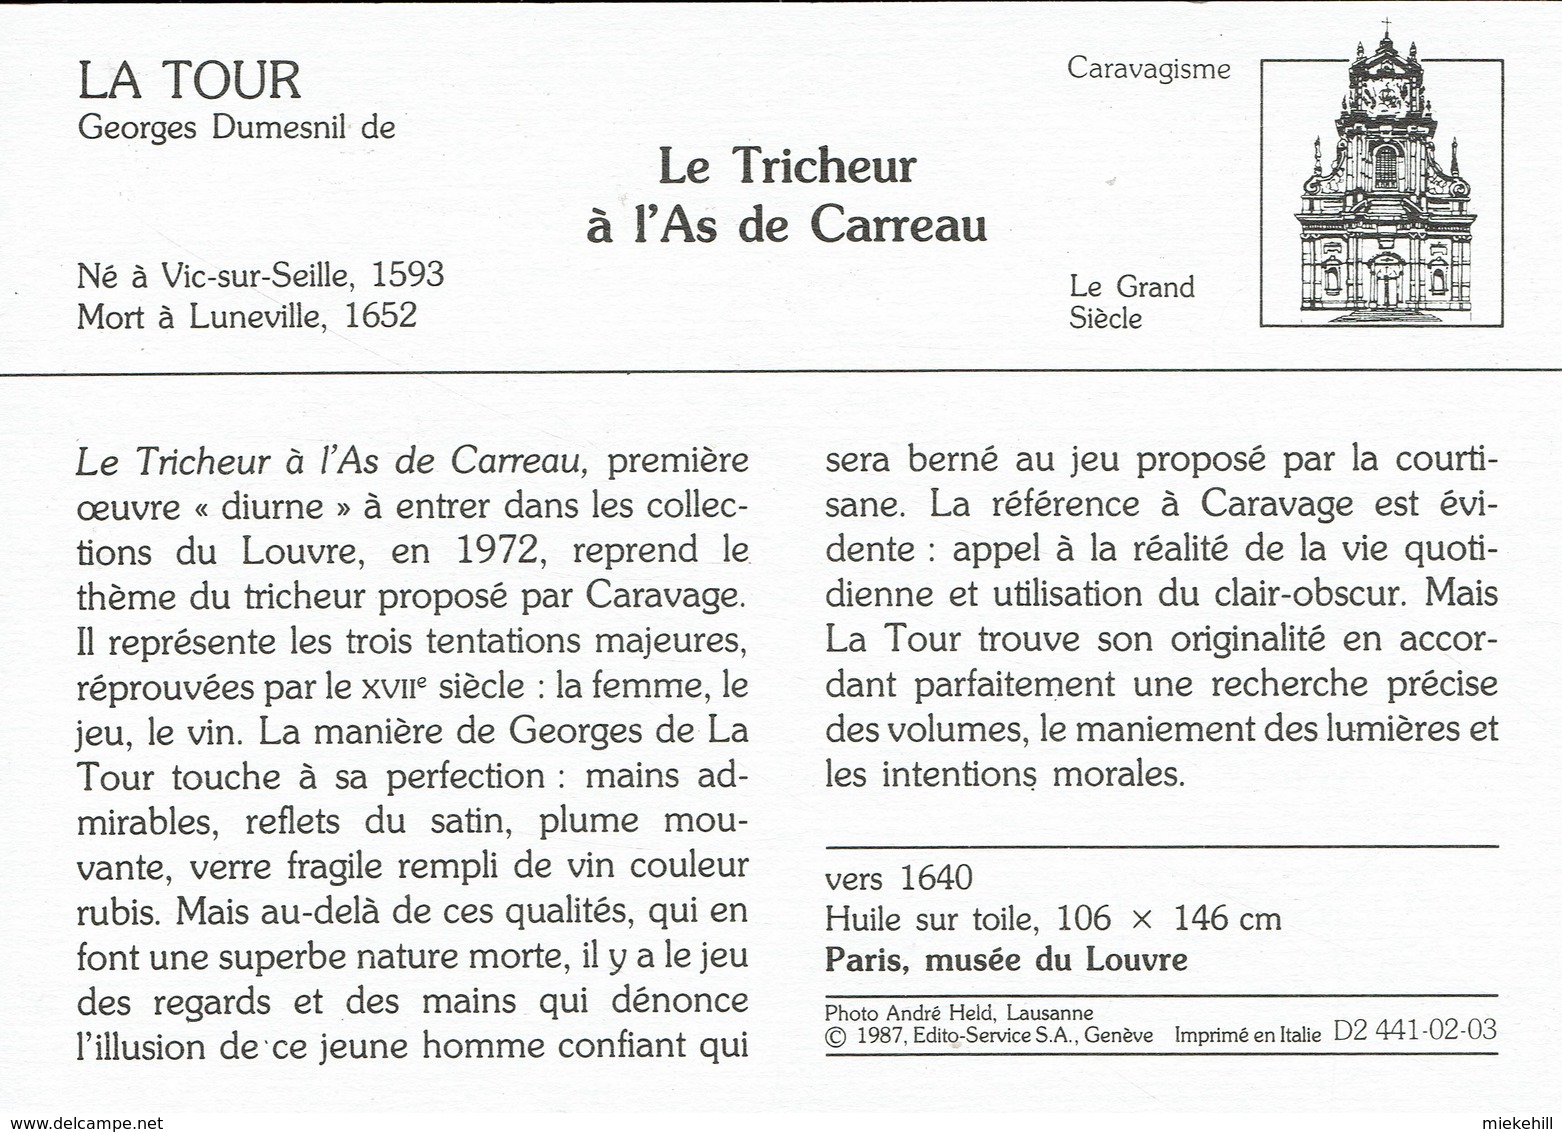 JEUX DE CARTE-TRICHEUR  A L'AS-VALSSPELER MET RUITENAAS-TABLEAU DE GEORGES LA TOUR-PARIS MUSEE DU LOUVRE - Playing Cards